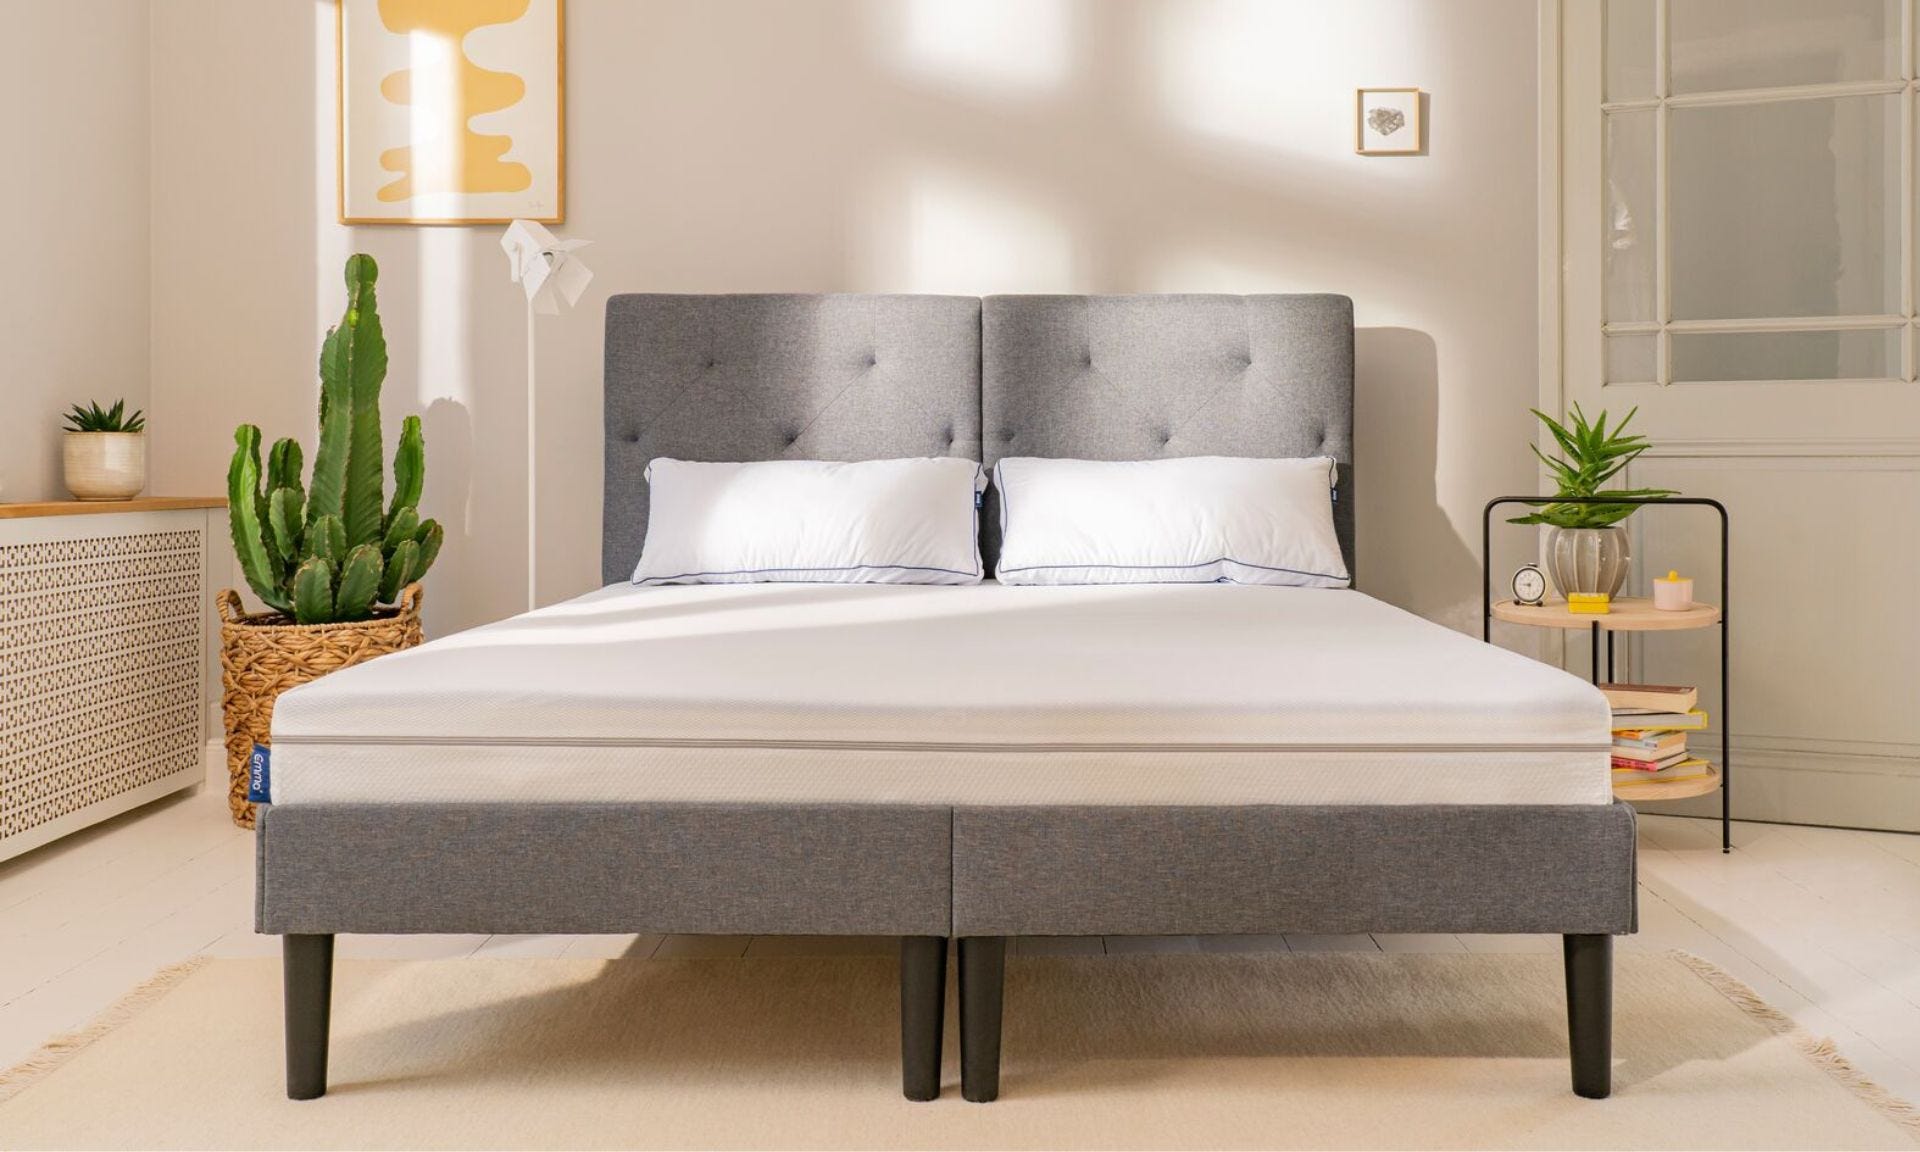 Colchón emma one en cama tapizada gris con 2 almohadas microfibra blancas